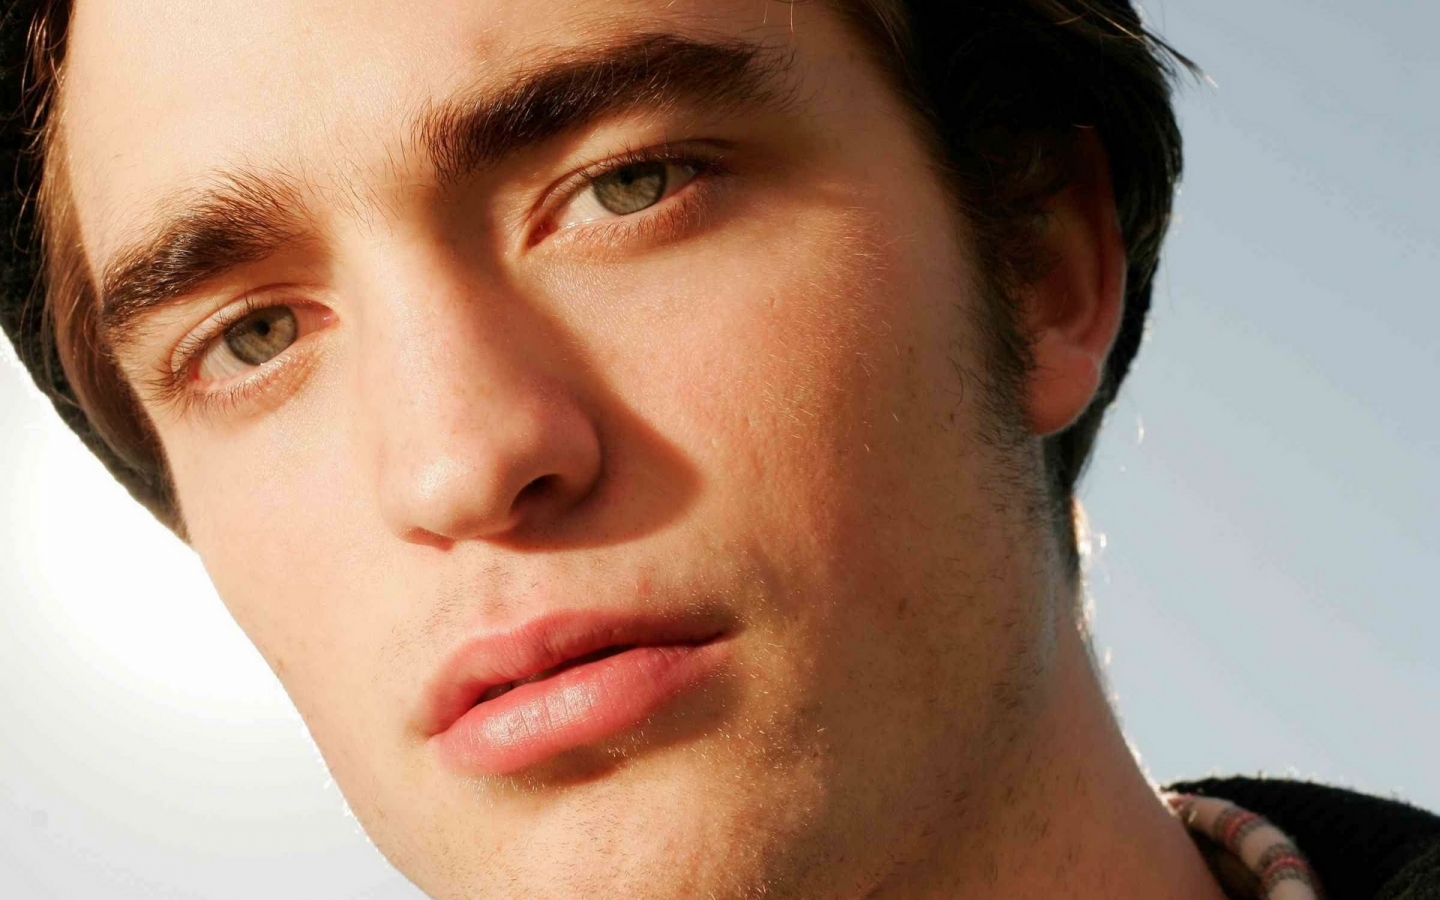 Robert Pattinson Close-up for 1440 x 900 widescreen resolution